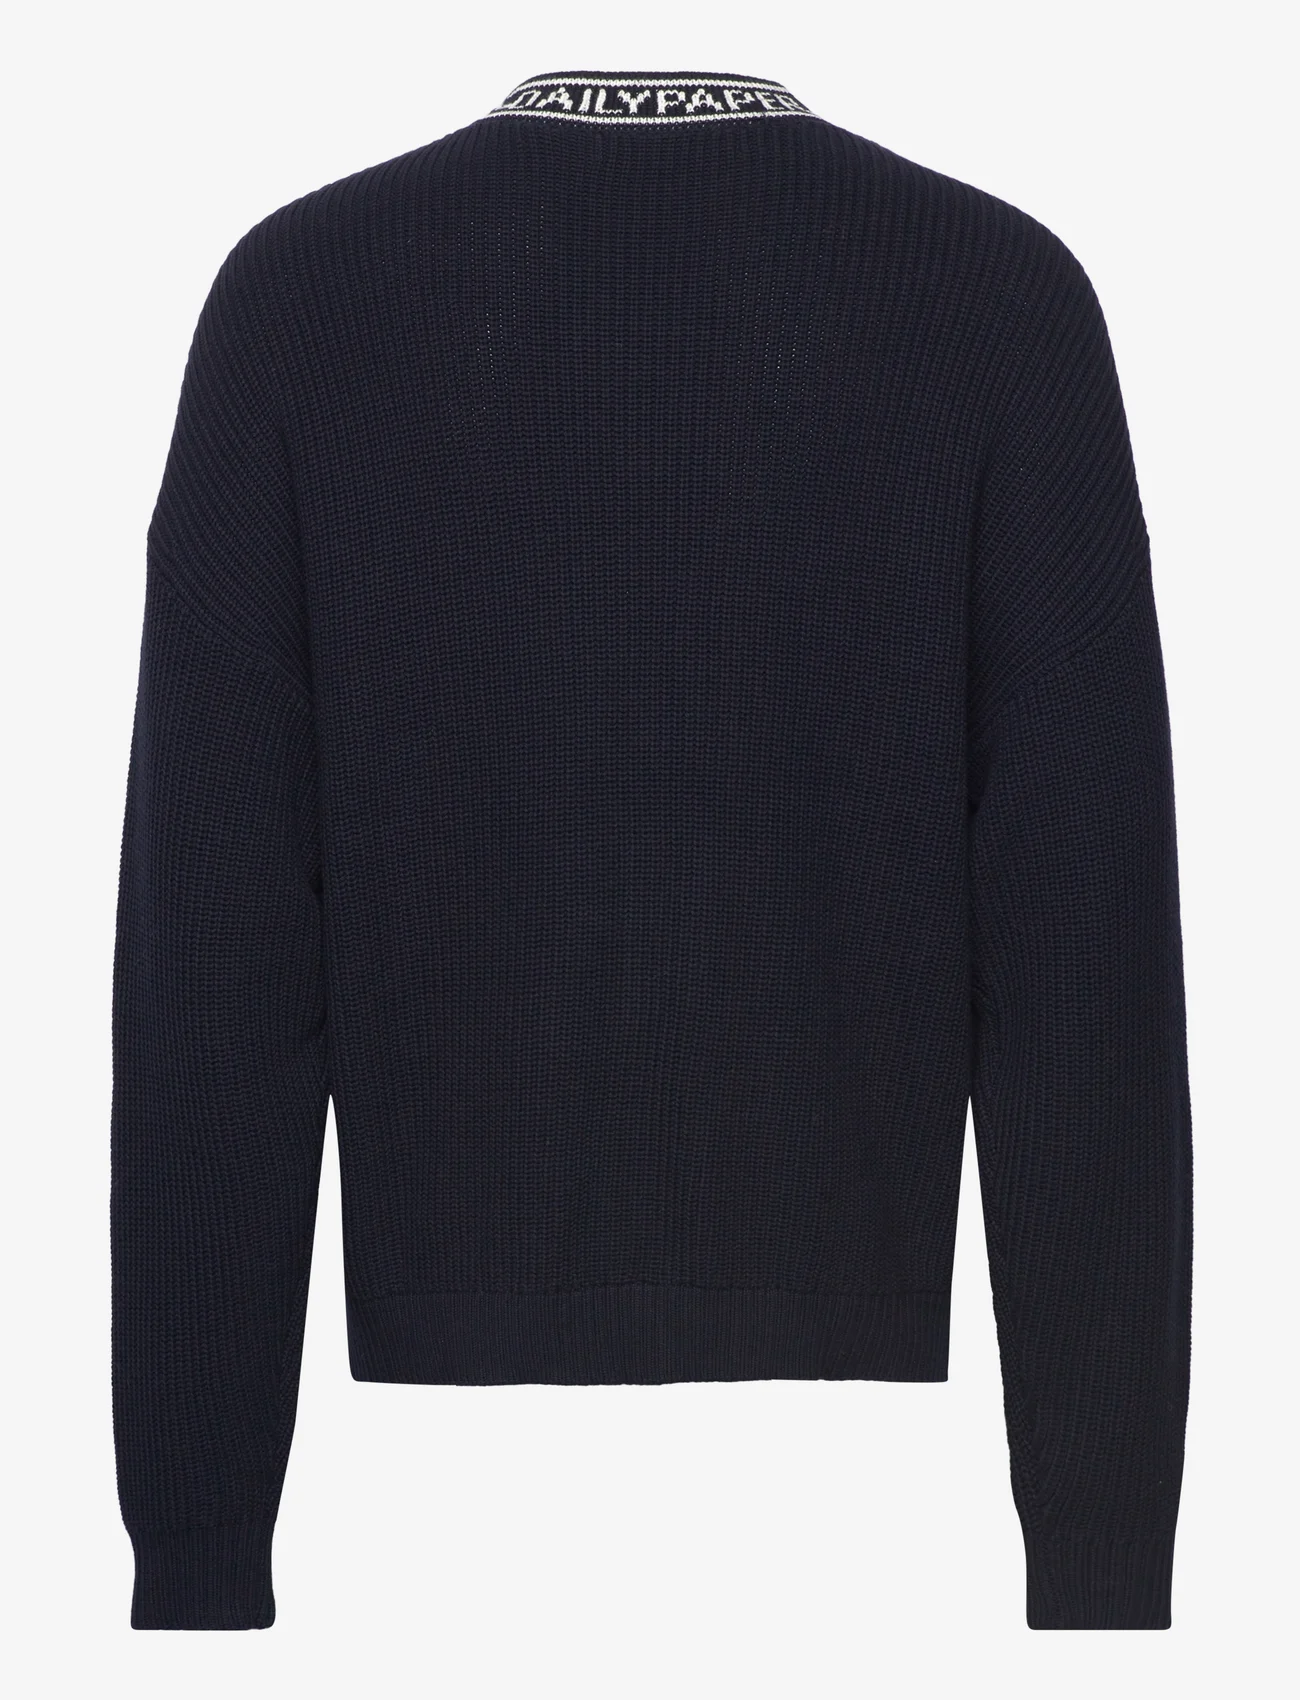 Daily Paper - roshaun sweater - v-ausschnitt - deep navy - 1